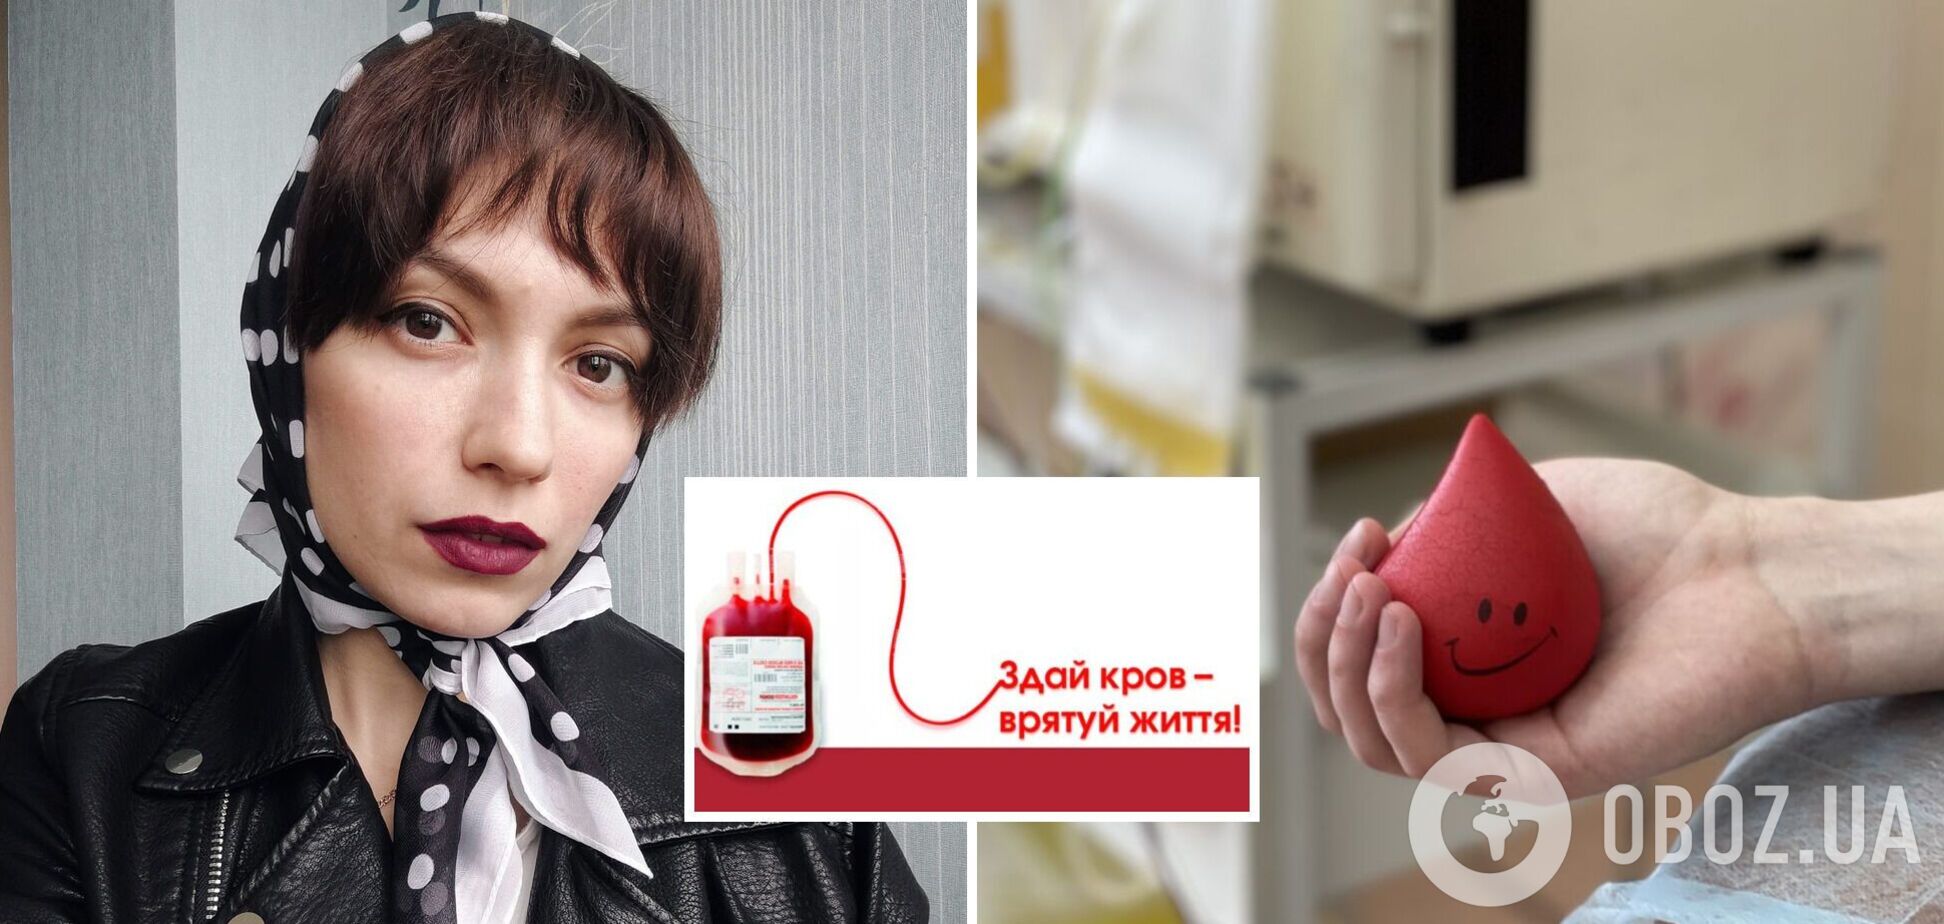 Украинцев просят сдать кровь, чтобы спасти жизнь 26-летней красавице-киевлянке: девушка страдает редкой аномалией сосудов. Фото